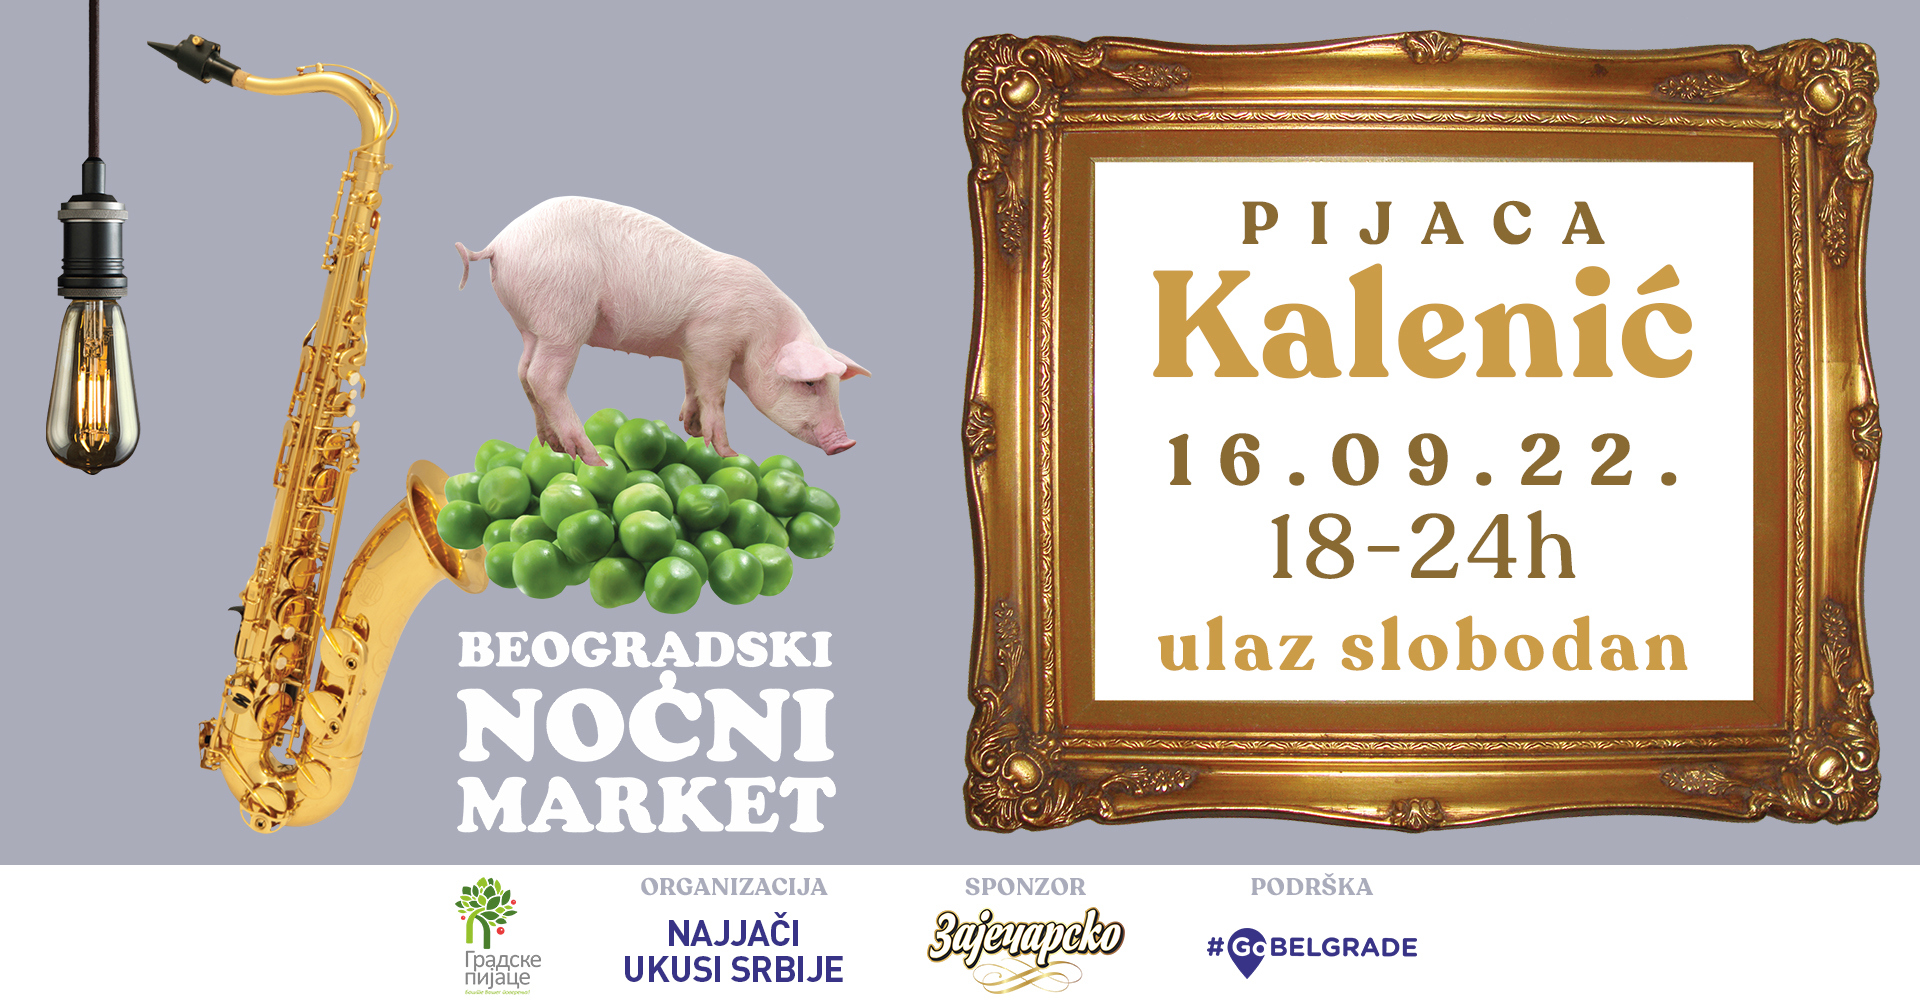 Beogradski Noćni Market Kalenić pijaca 16.09.2022.